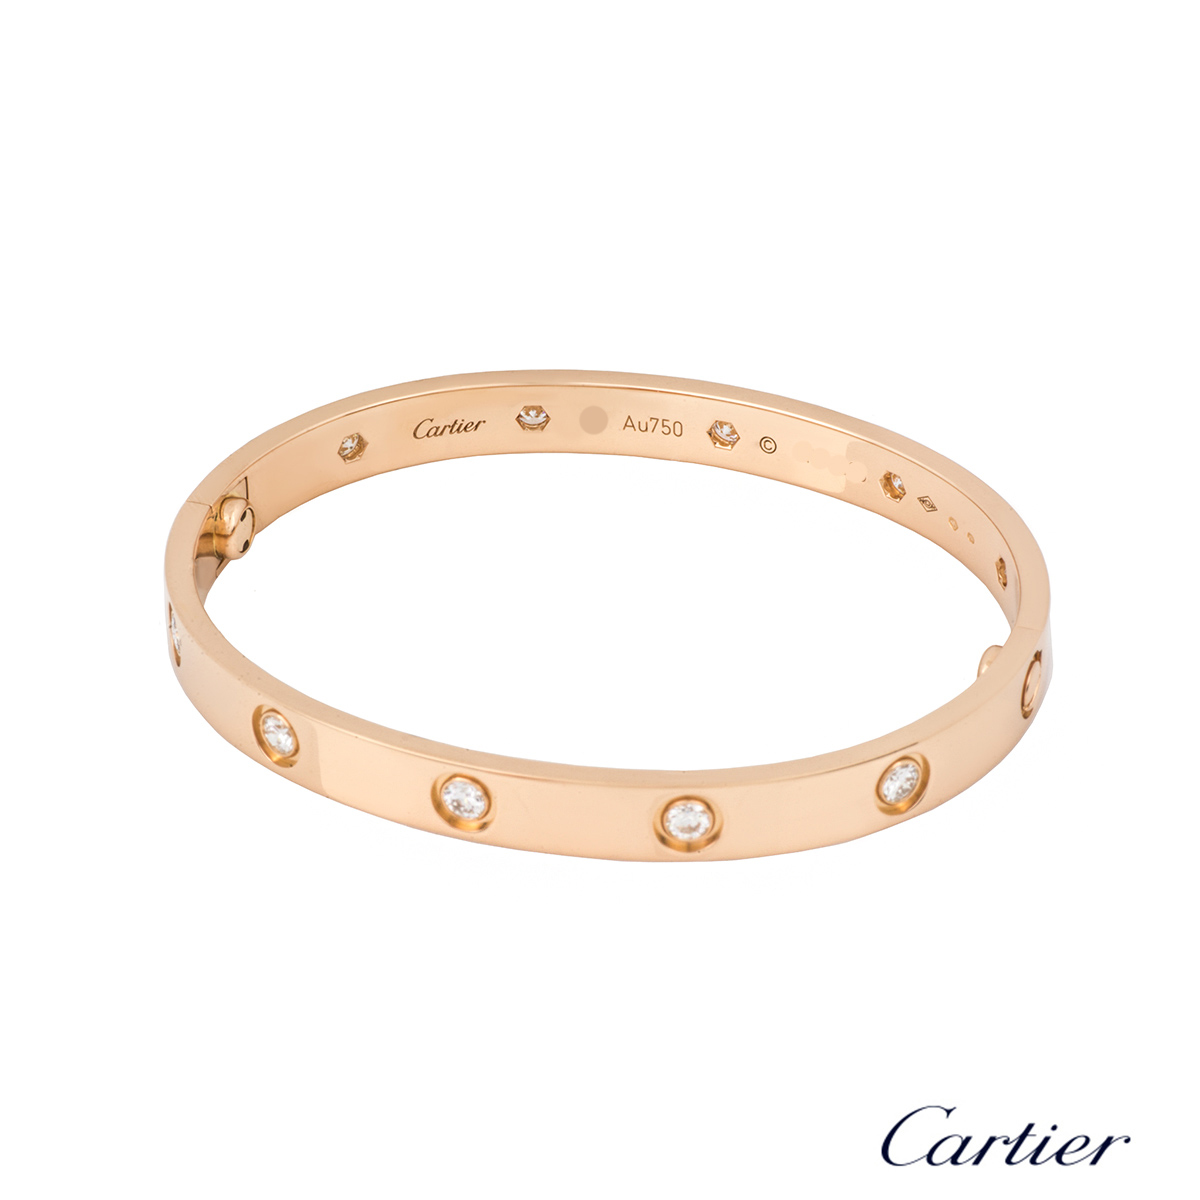  Cartier  Rose Gold Full Diamond  Love Bracelet  Size 16 